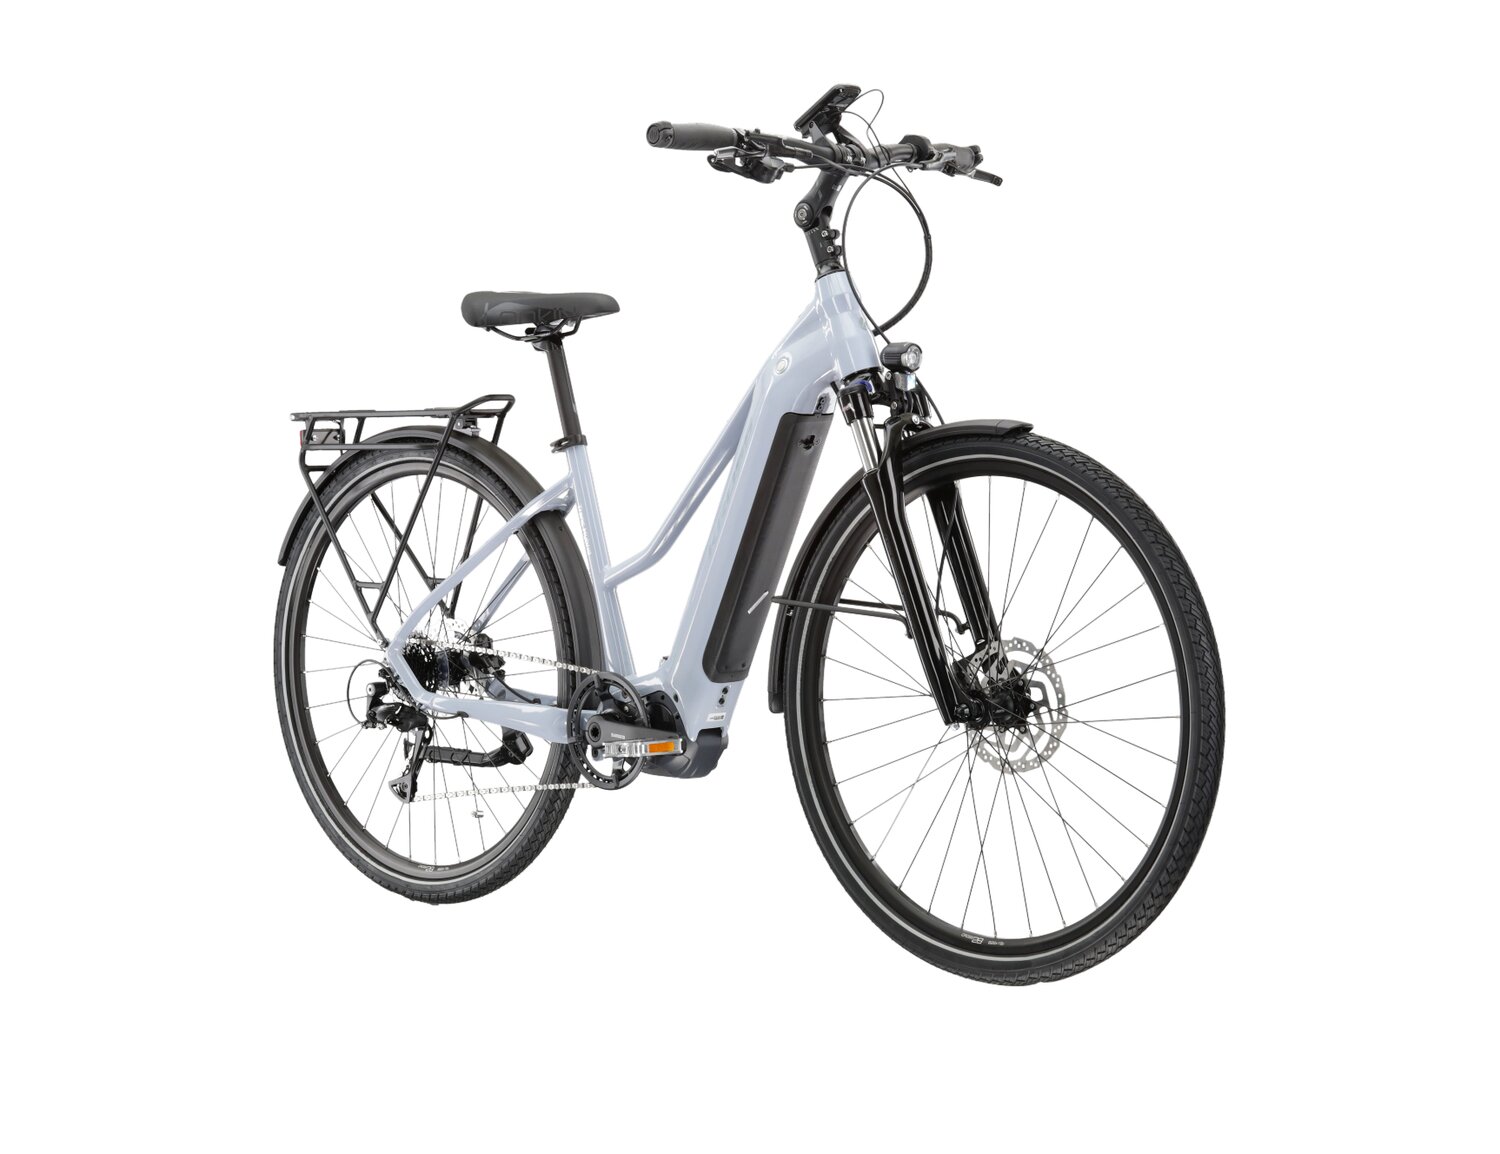  Elektryczny rower trekkingowy KROSS Trans Hybrid 4.0 500 Wh UNI na aluminiowej ramie w kolorze niebieskiem wyposażony w osprzęt Shimano i napęd elektryczny Shimano